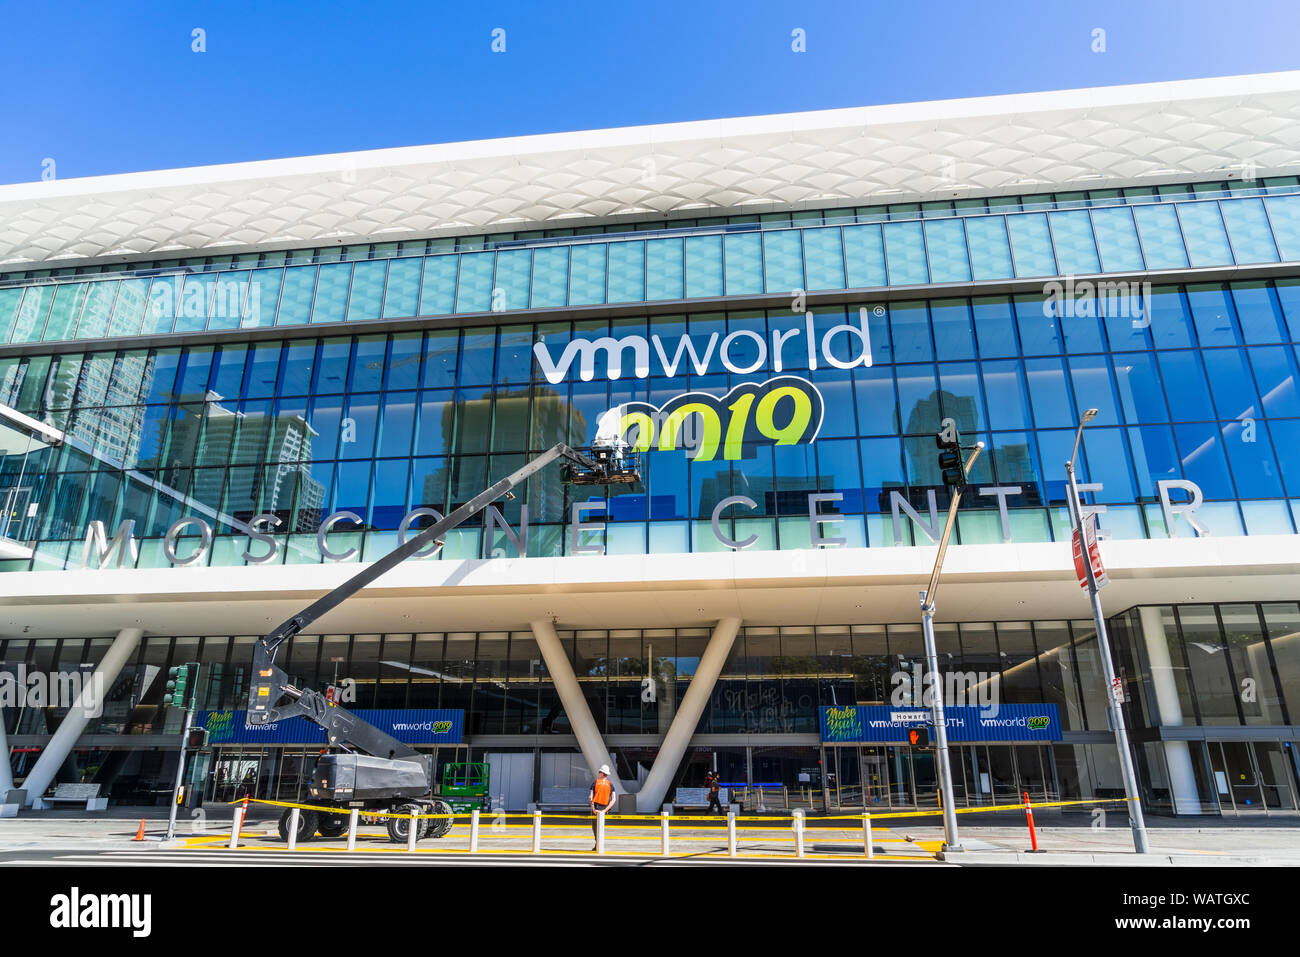 Feb 21, 2019 San Francisco/CA/USA - VMworld 2019 (unvollständig) auf dem Moscone Center Fassade angezeigt; die VMworld ist eine globale Konferenz für virt Stockfoto